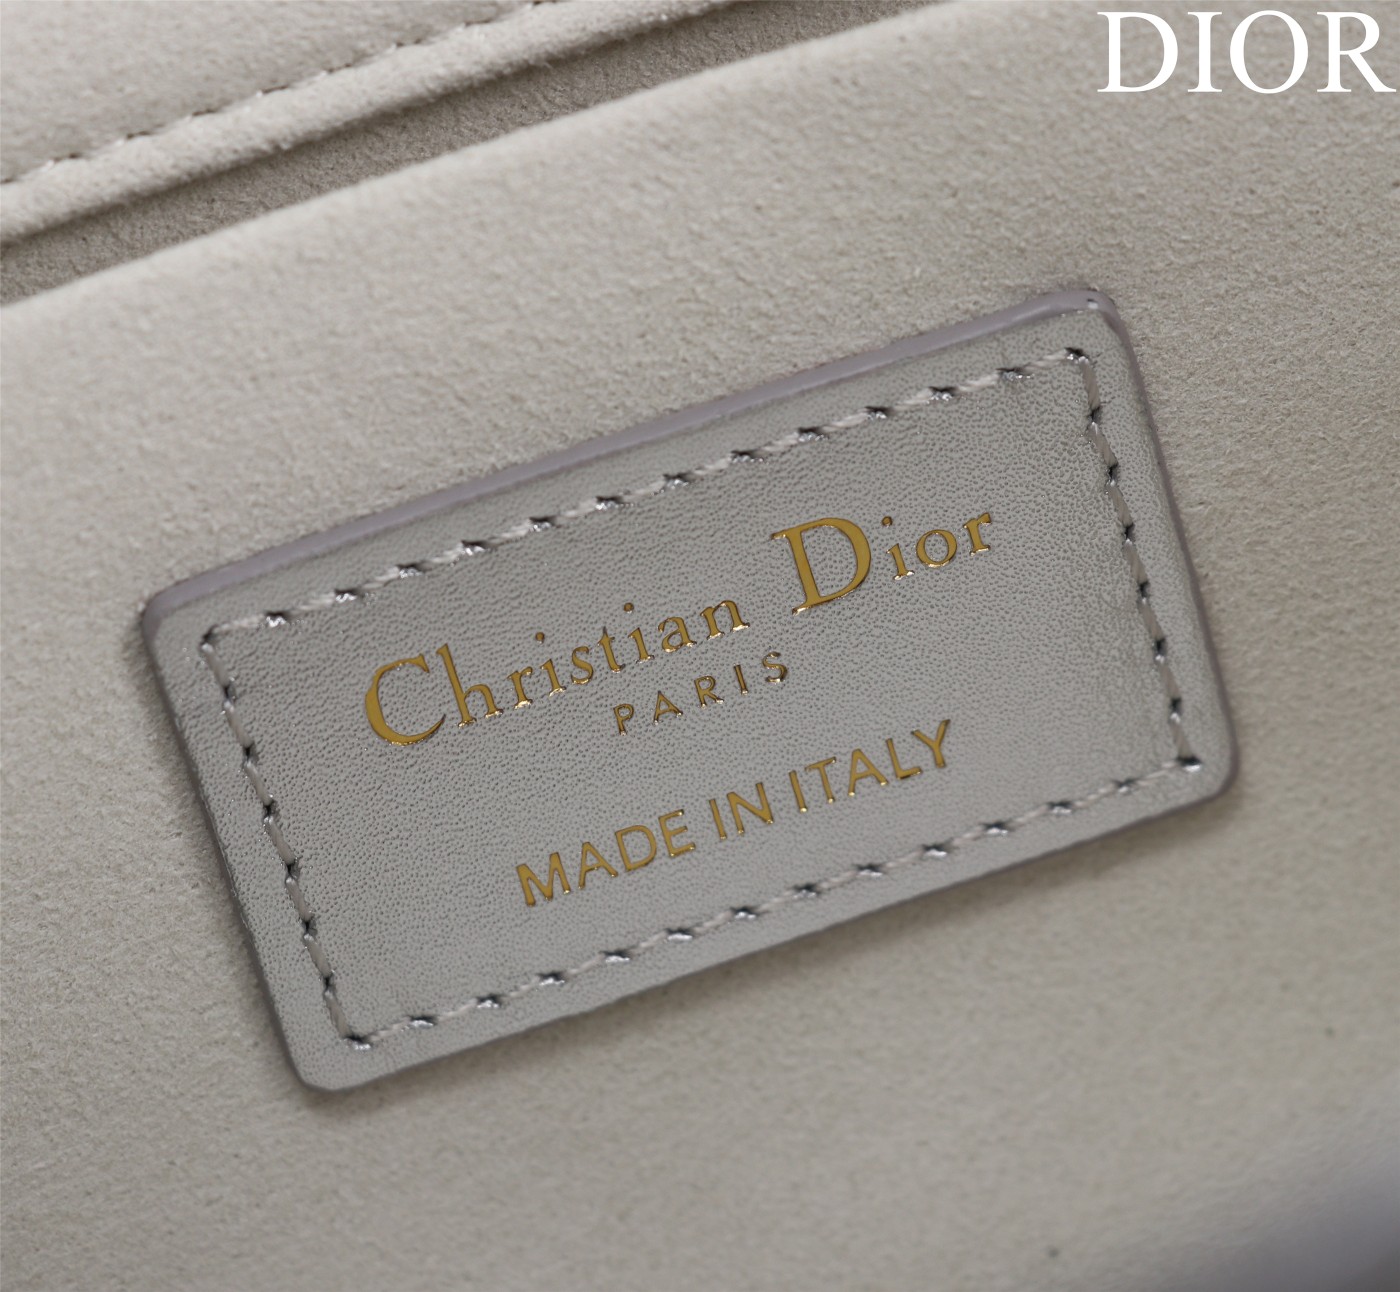 迪奥Dior顶级进口原厂牛皮钻石纹横款戴妃包出货M0540压花银色Size:26*13.5*5cm